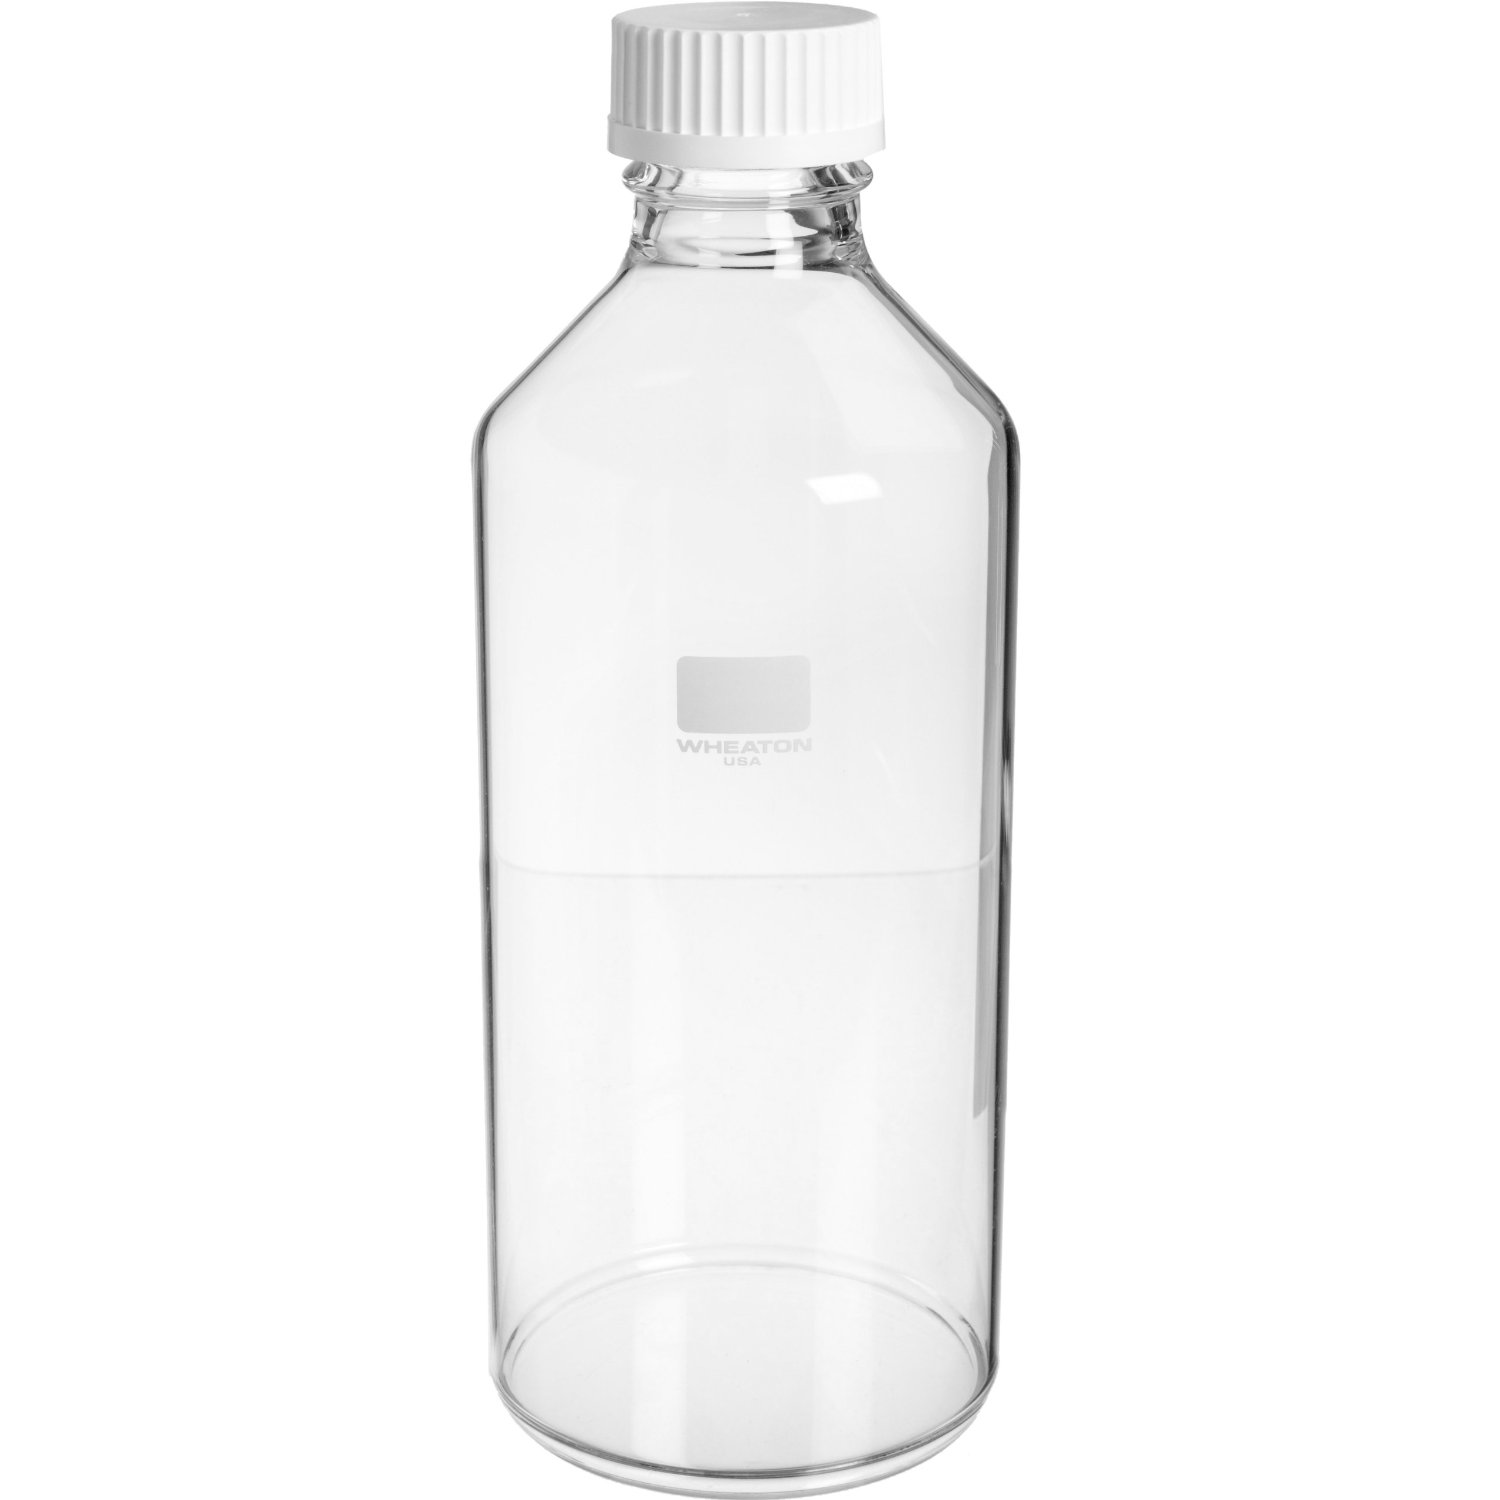 WHEATON 滚瓶 110×285mm. 700cm2可用表面积